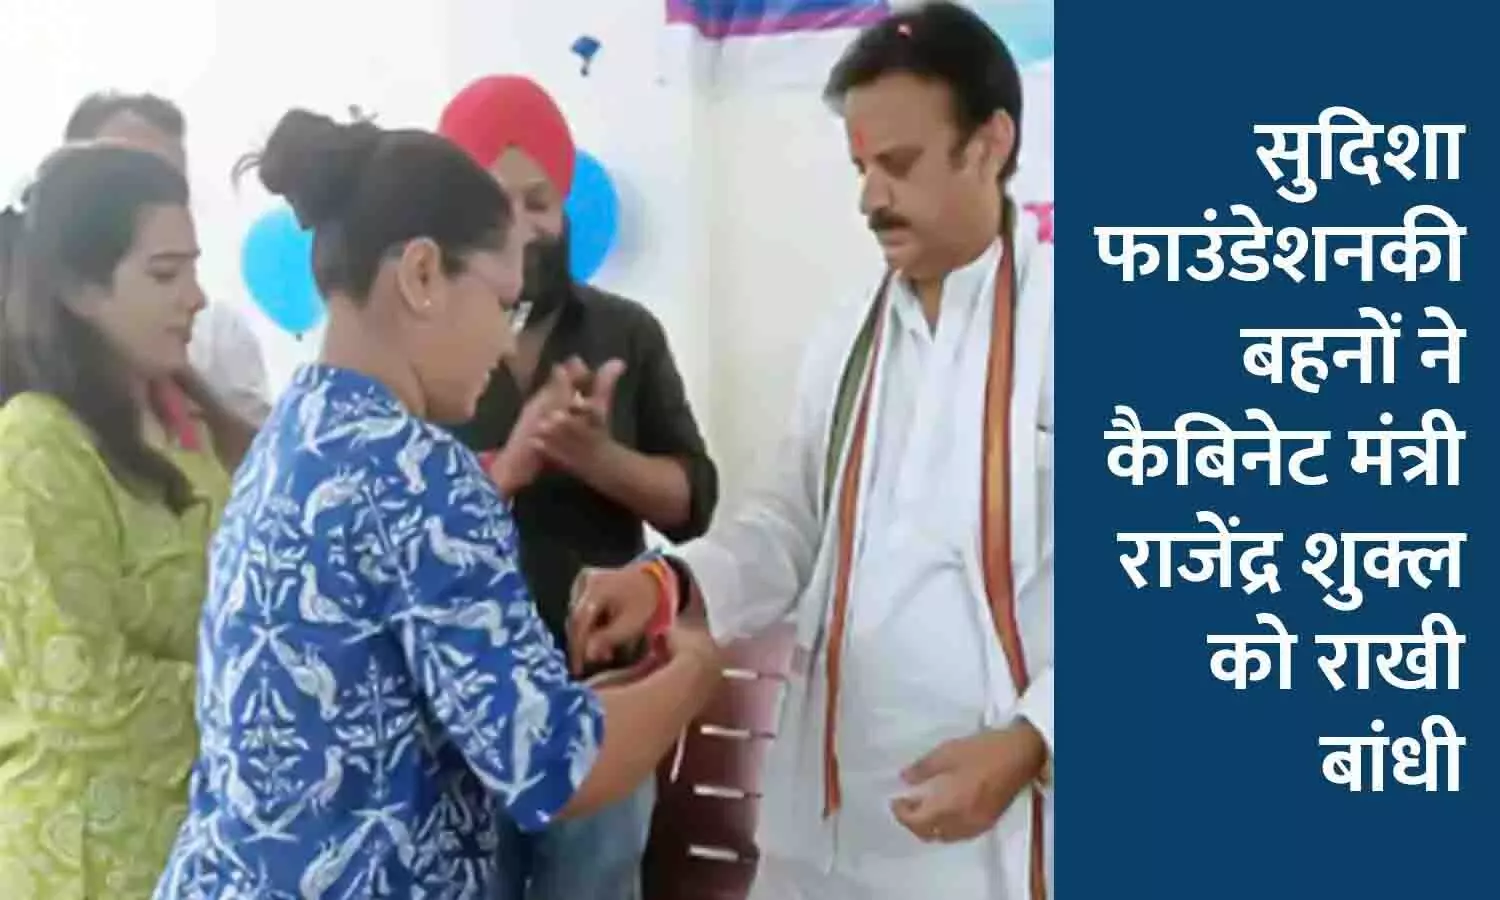 कैबिनेट मंत्री राजेंद्र शुक्ल को राखी बांधी, रीवा में छात्रों को उपहार बांटे गए